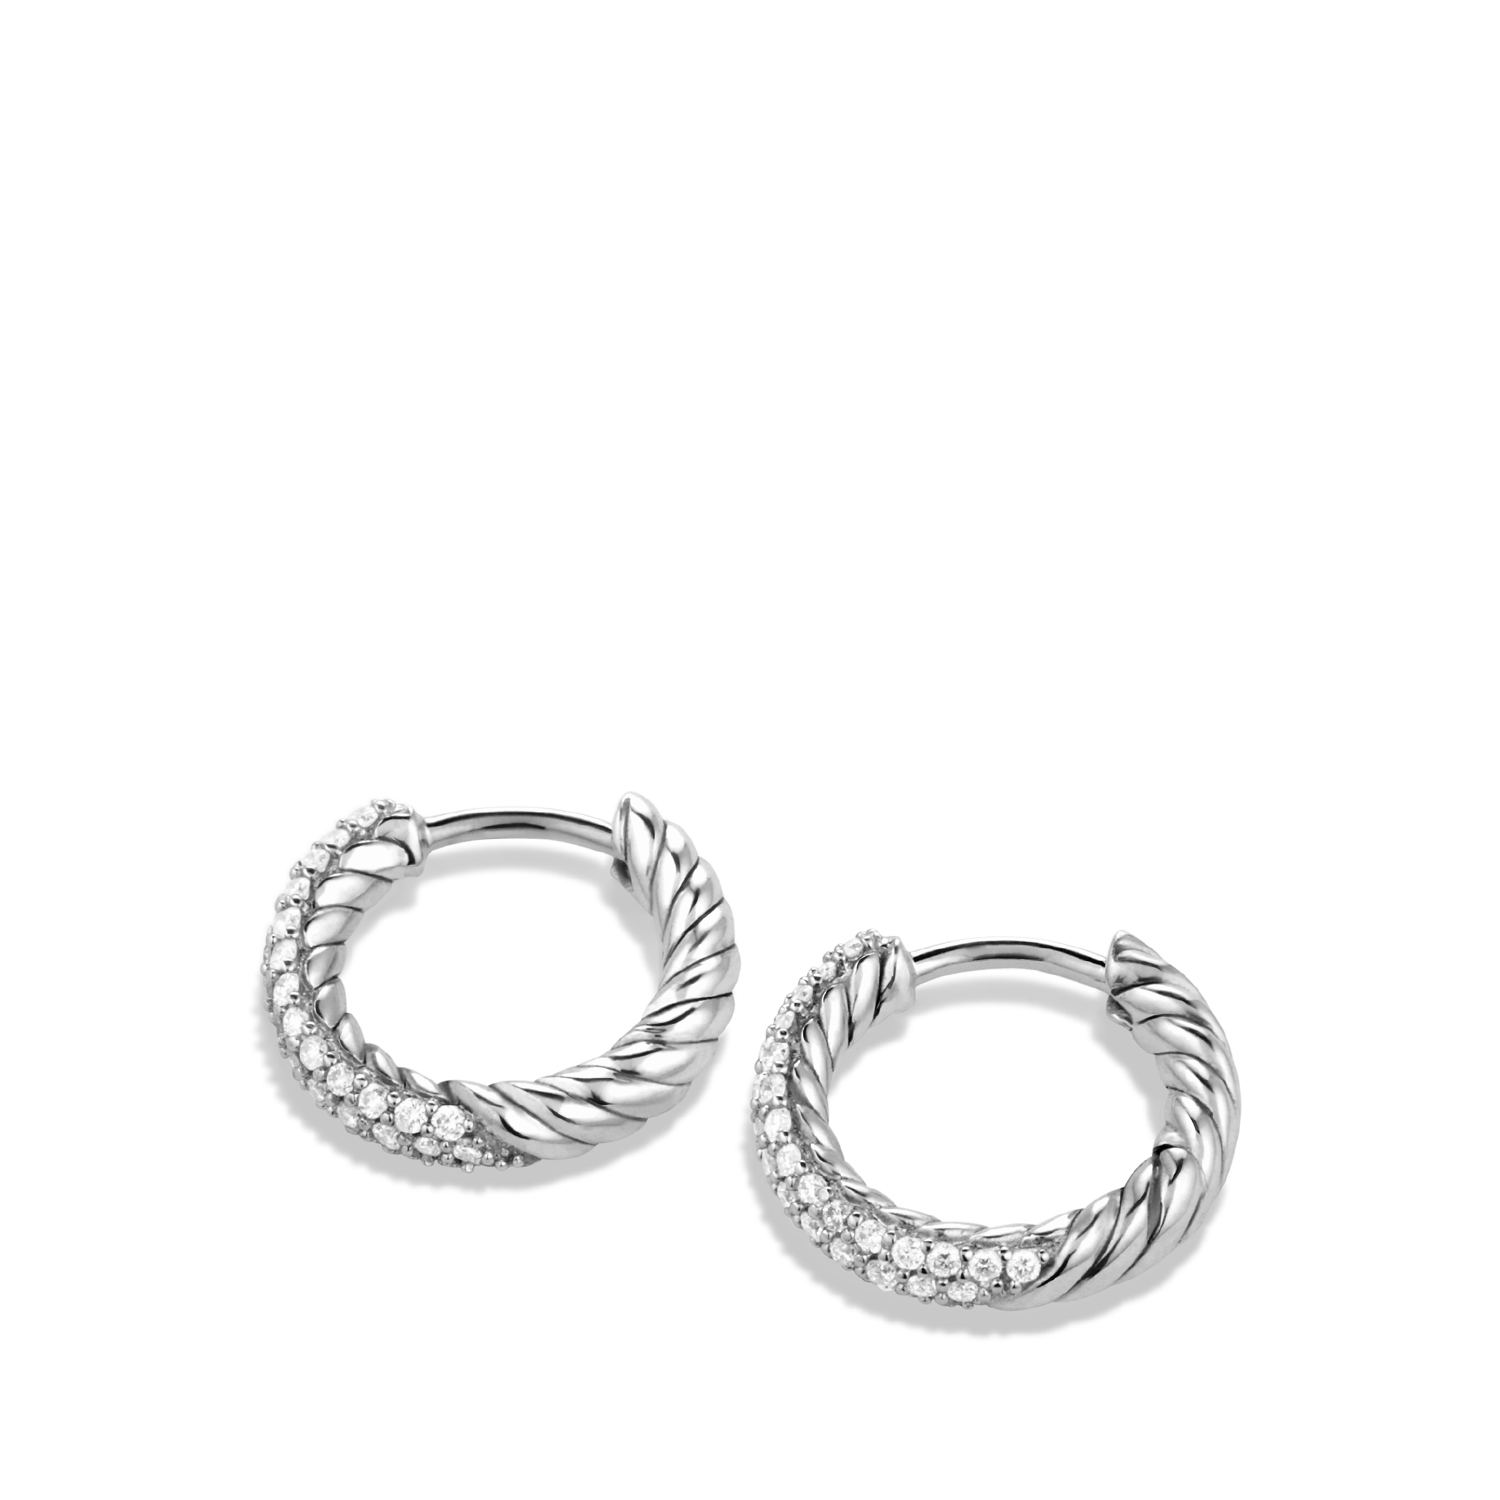 Petite Pavé Huggie Hoop Earrings in Sterling Silver with Diamonds, 14mm